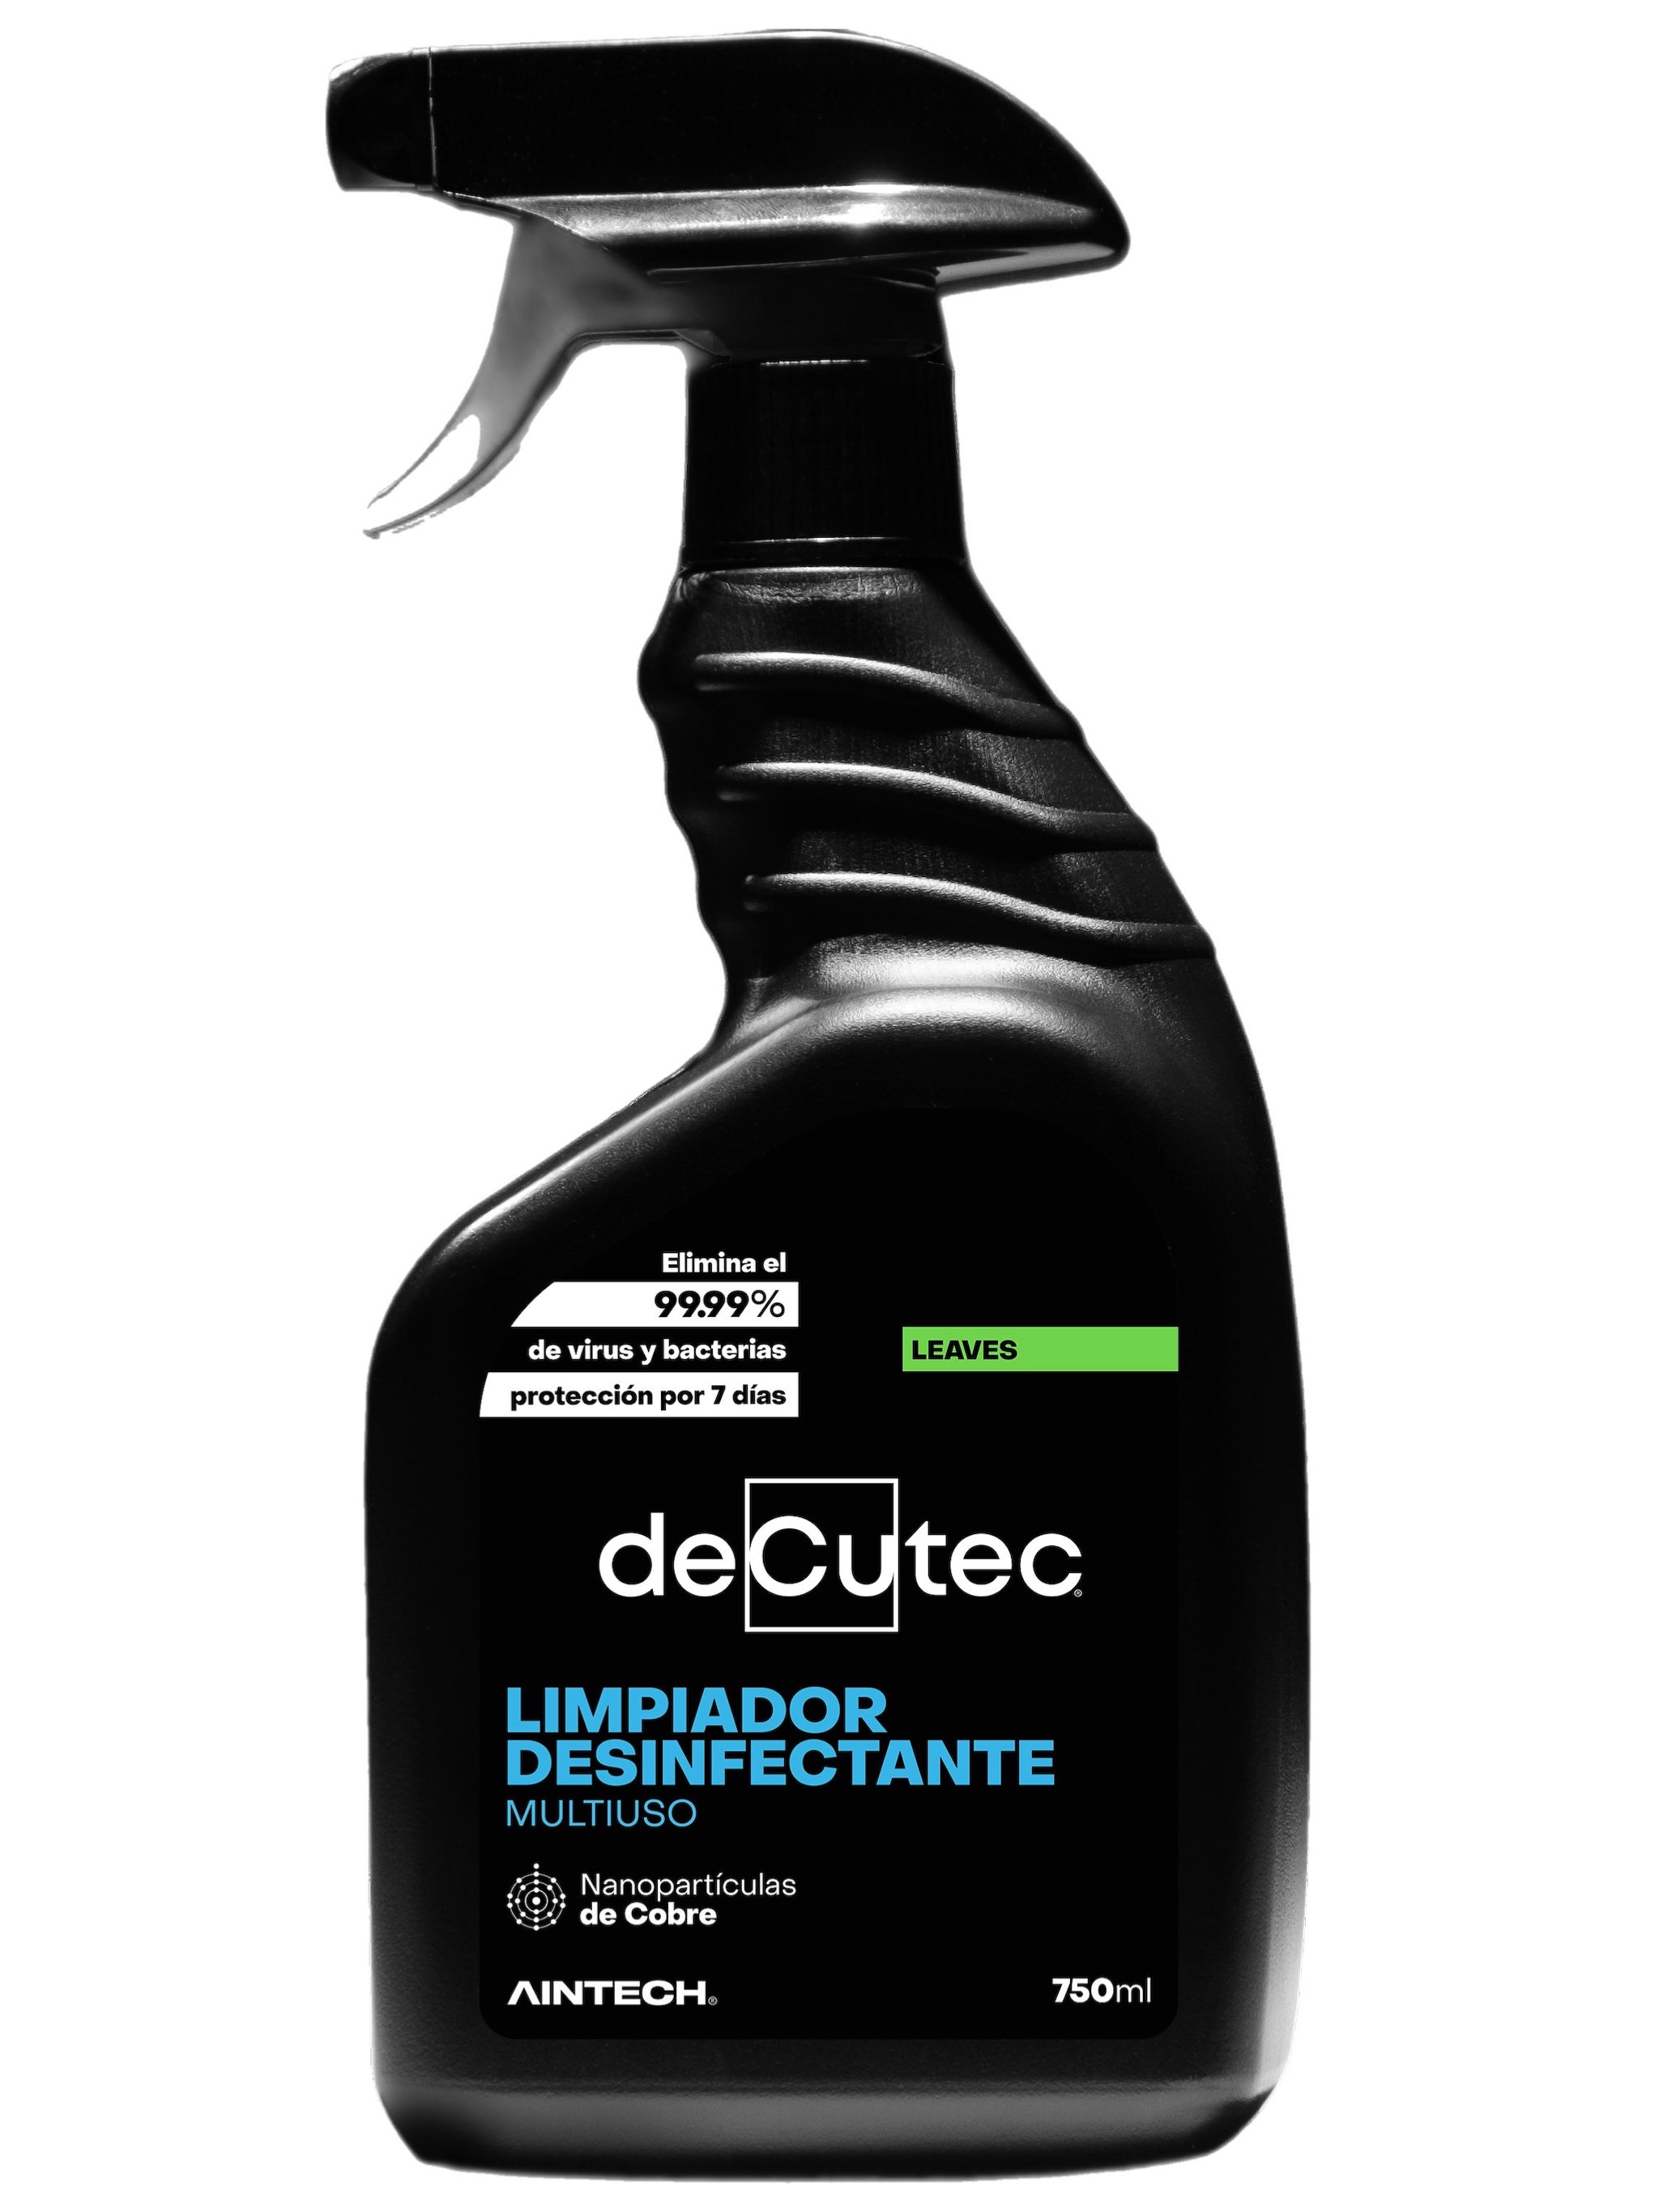 Limpiador Desinfectante de Cocina SANYTOL Botella 750ml